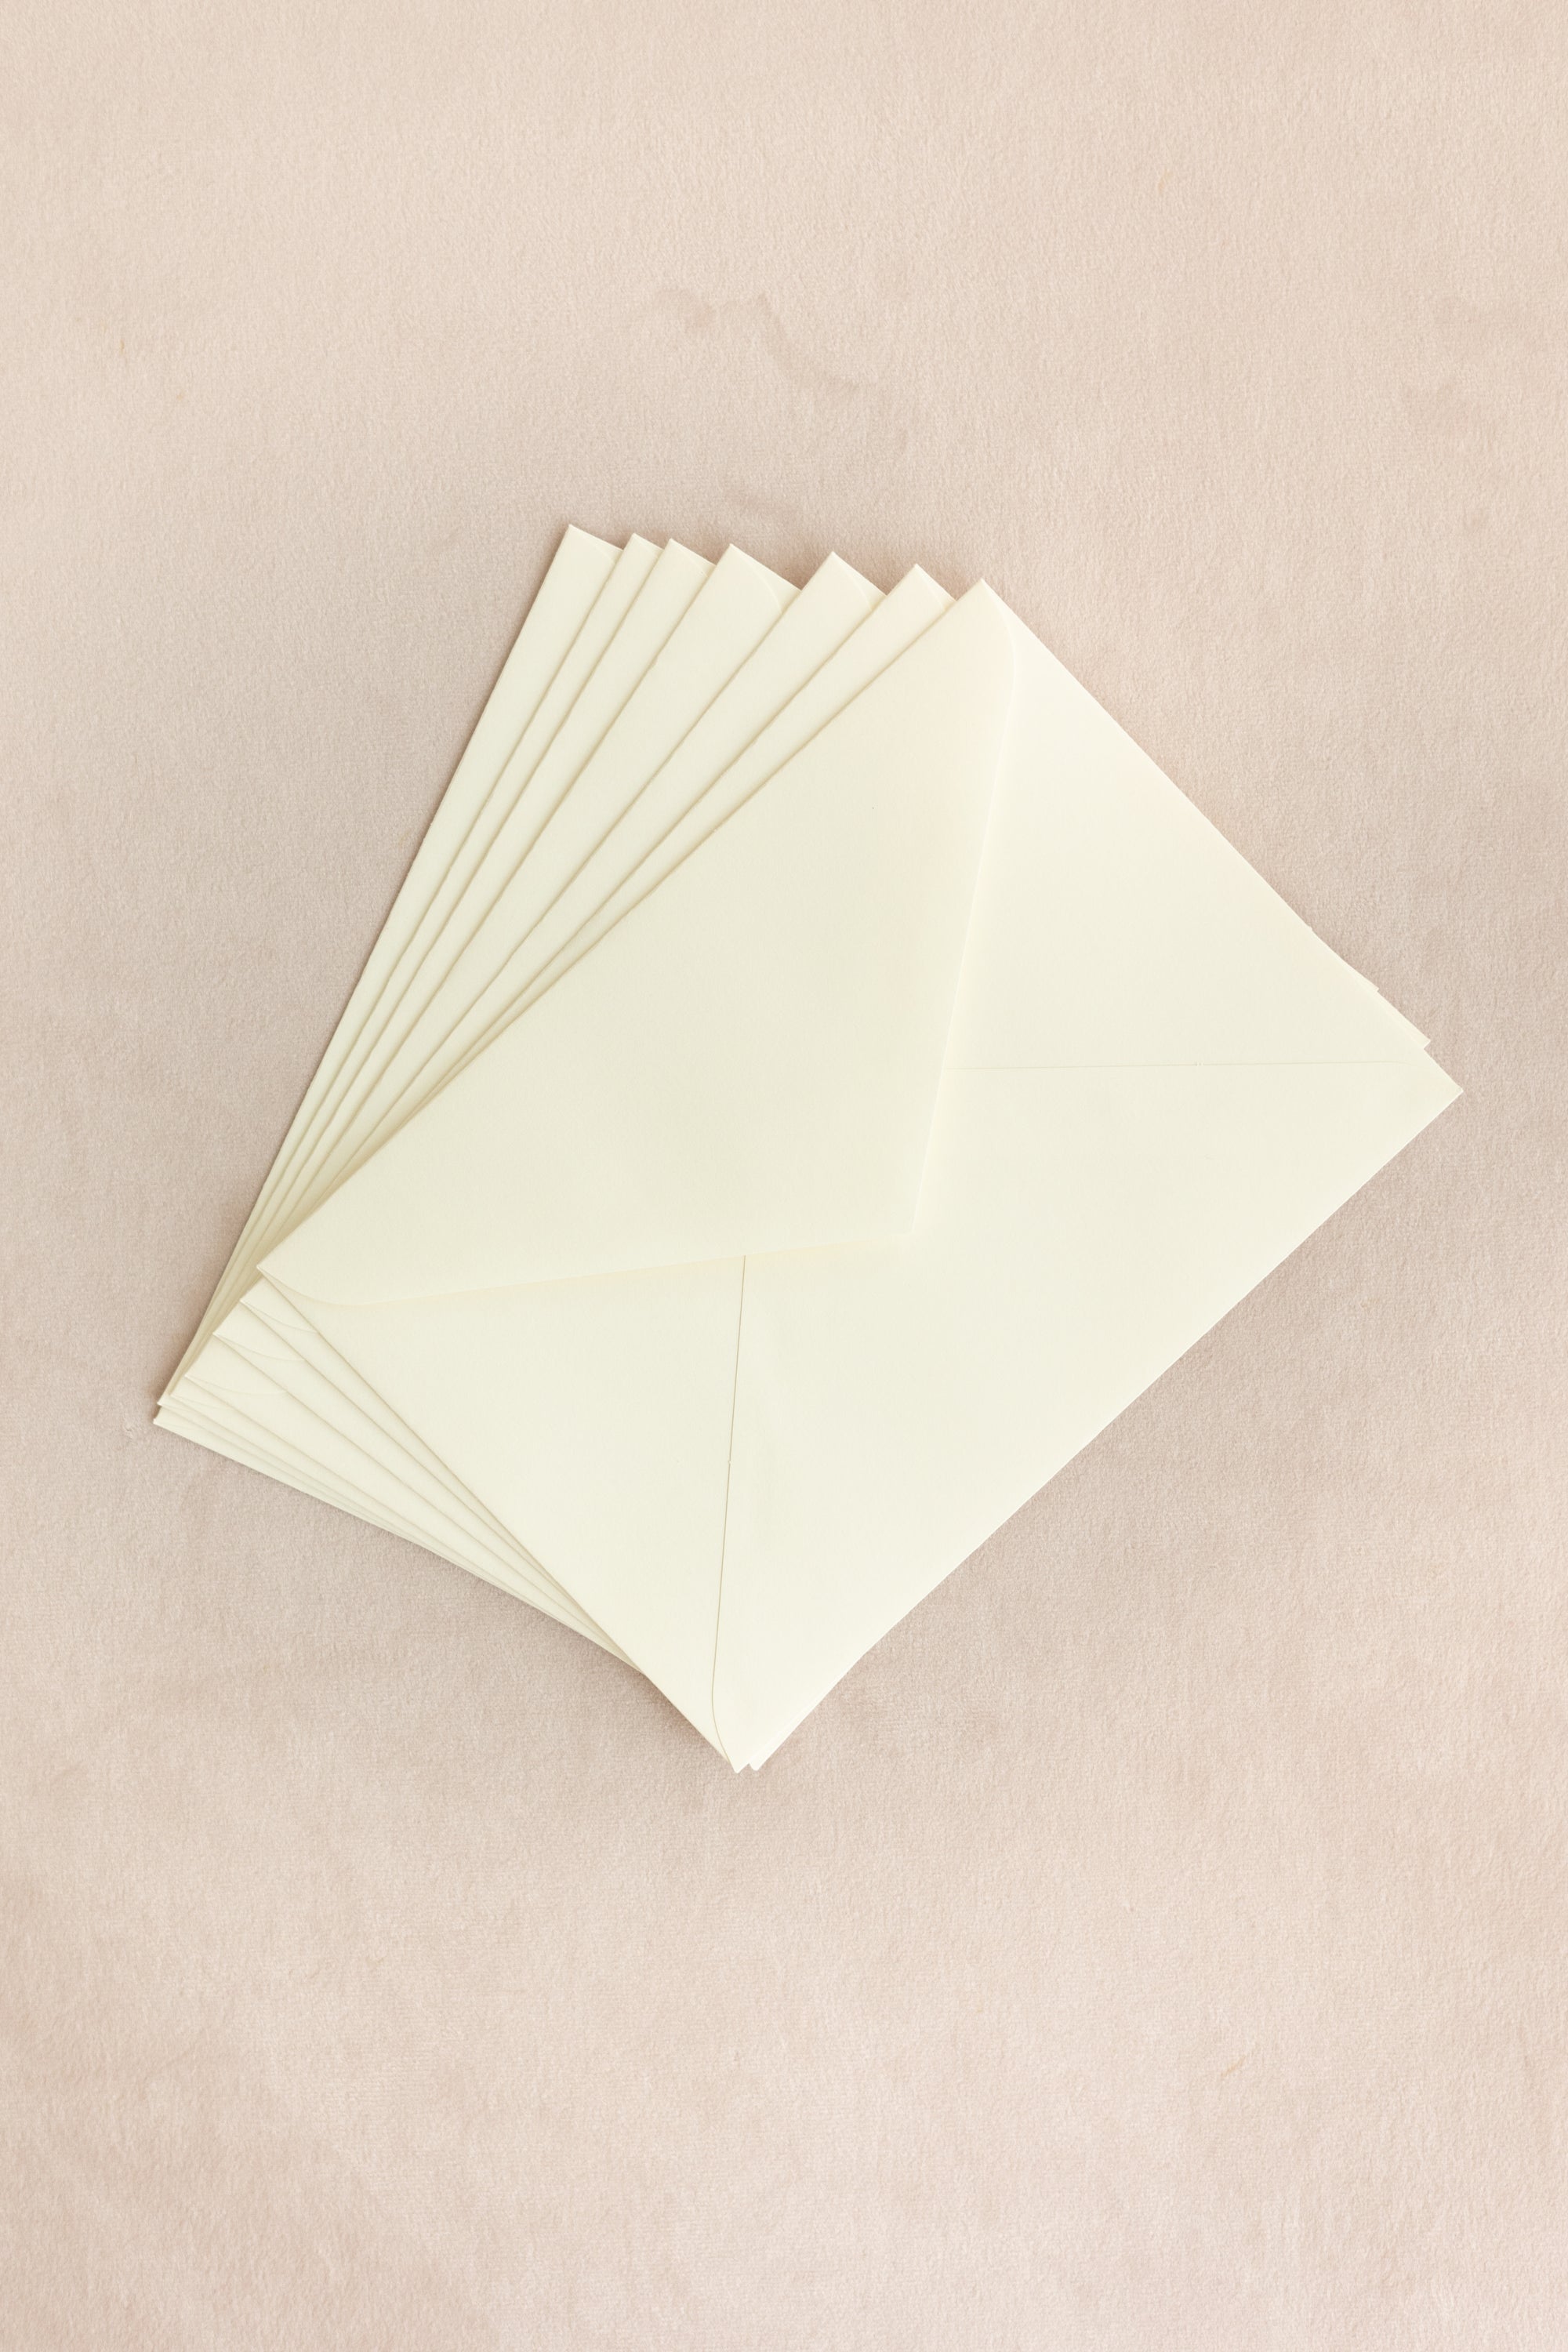 Silk Velvet Greeting Card 【Oval】Lapin